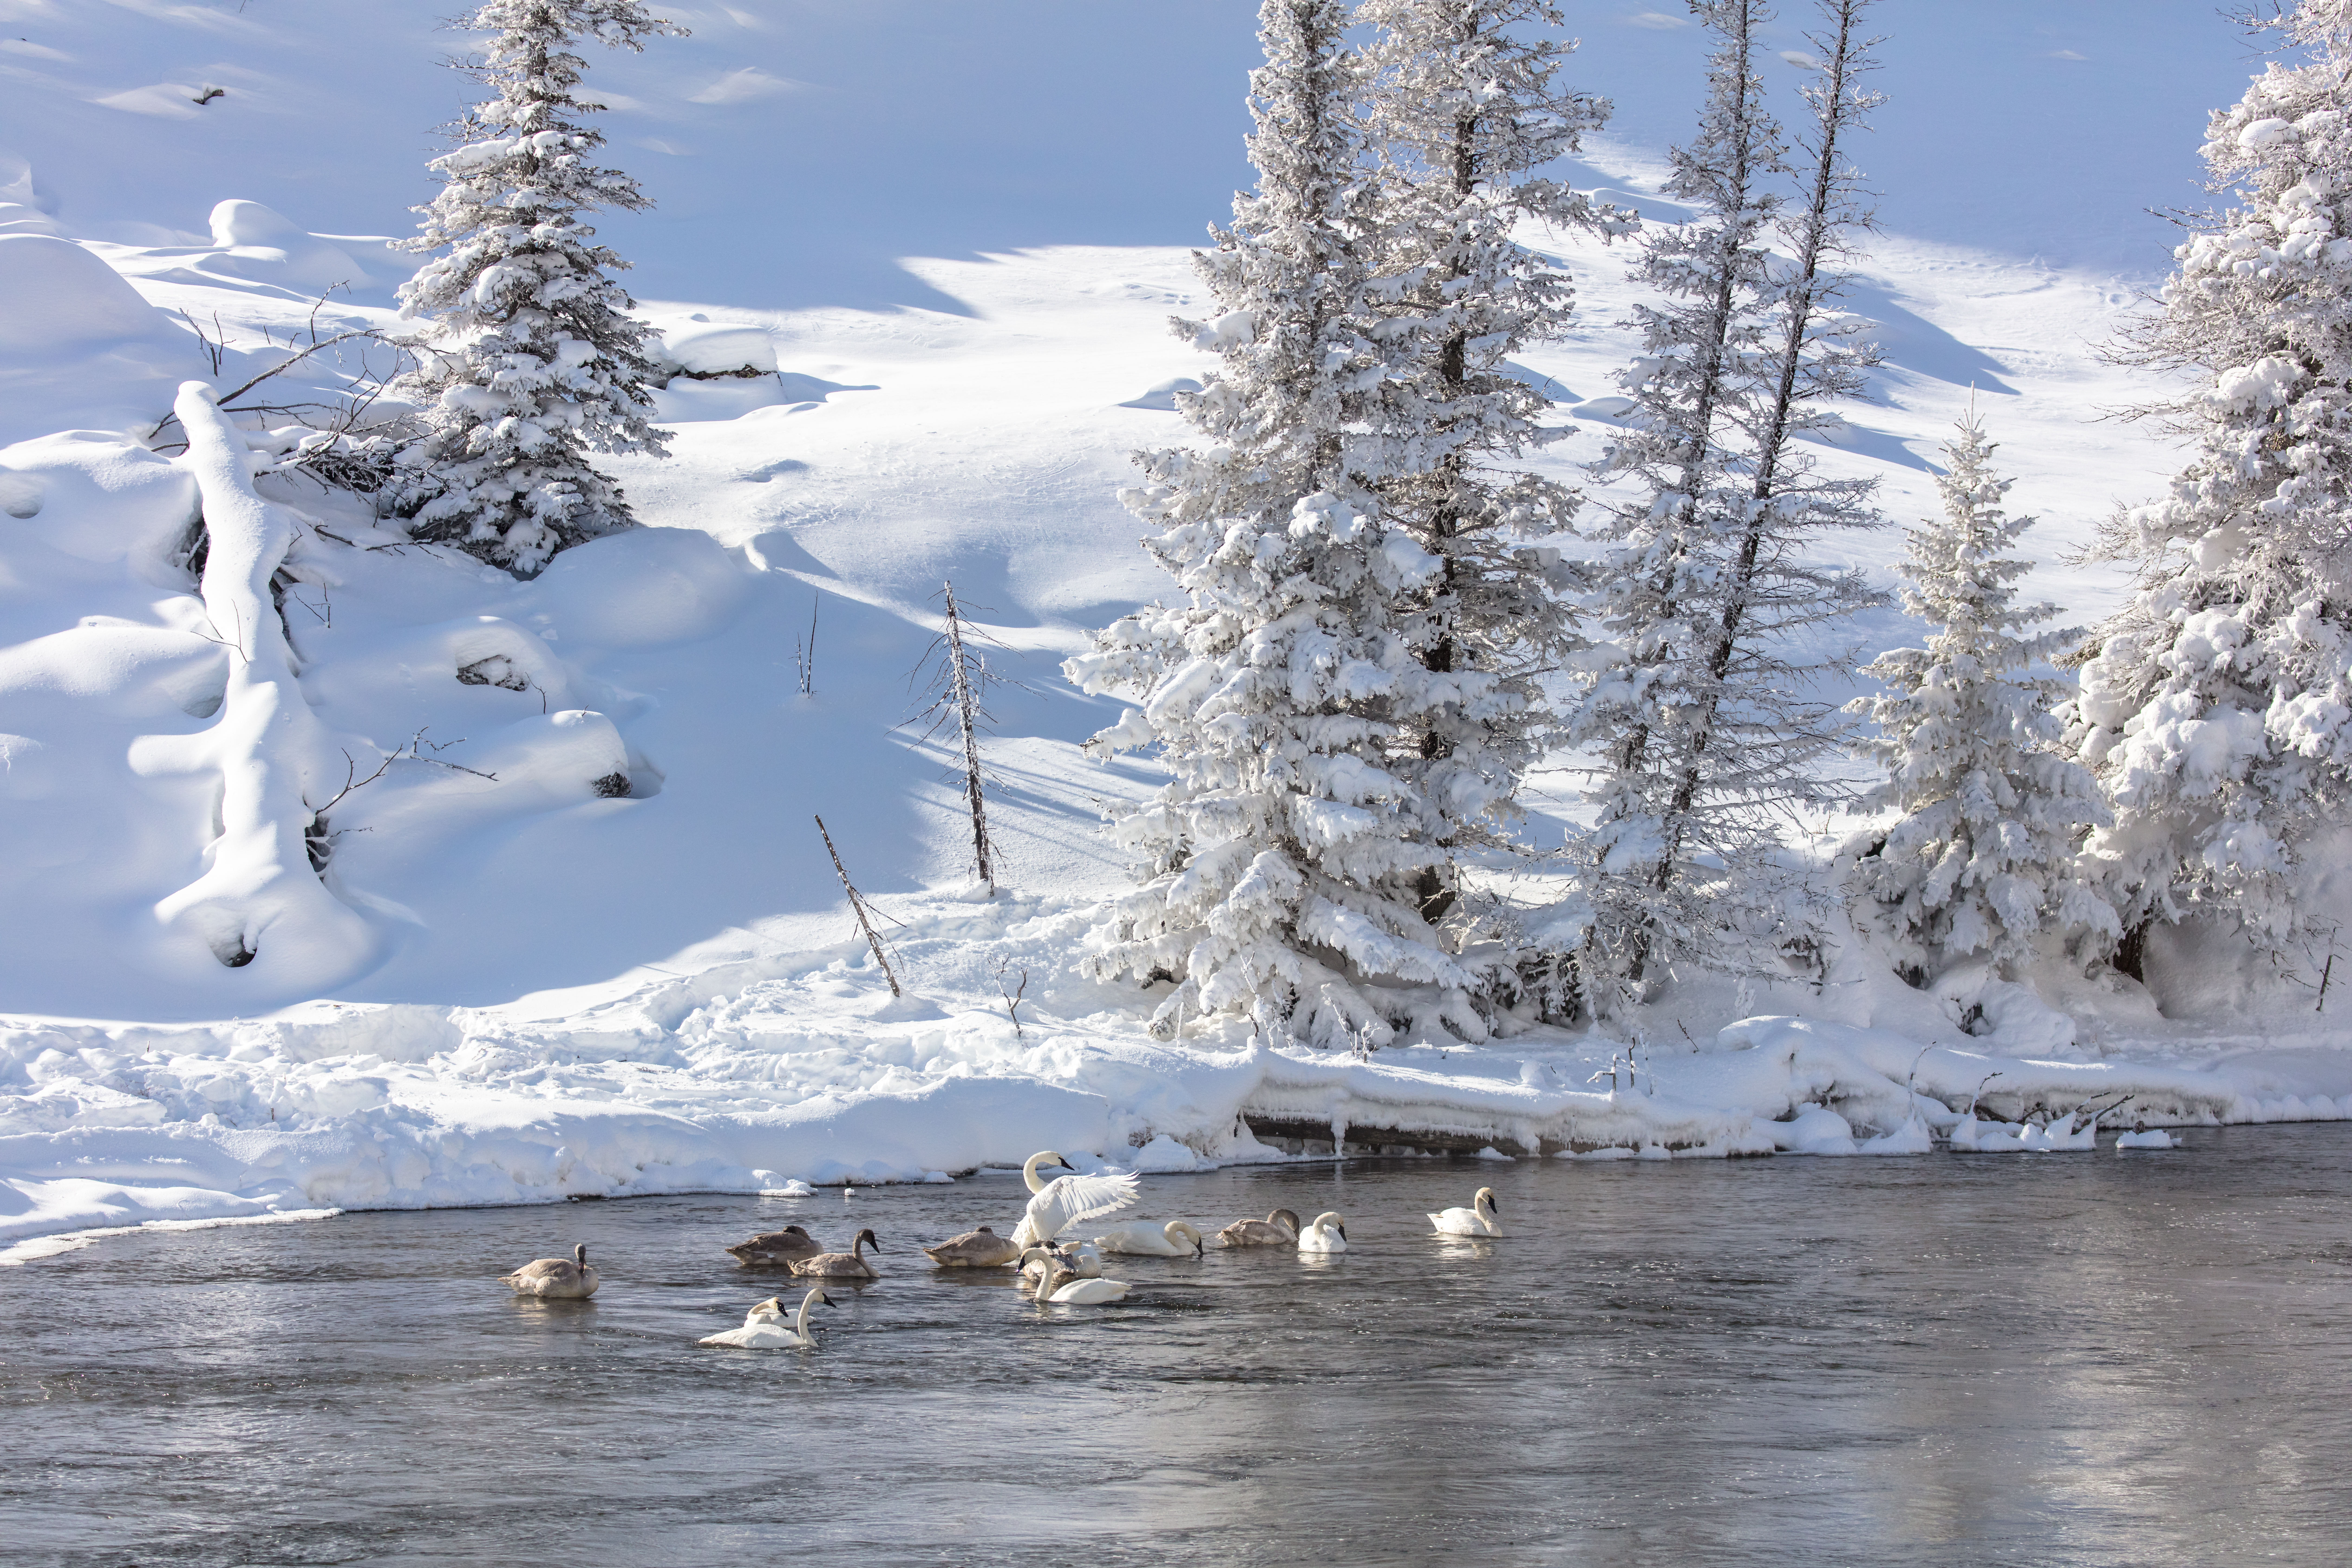 В окрестностях города местами еще лежит снег. Озеро в снегу. Лебеди зимой. Лебеди на речке зима. Красивые зимние пейзажи с белыми лебедями.